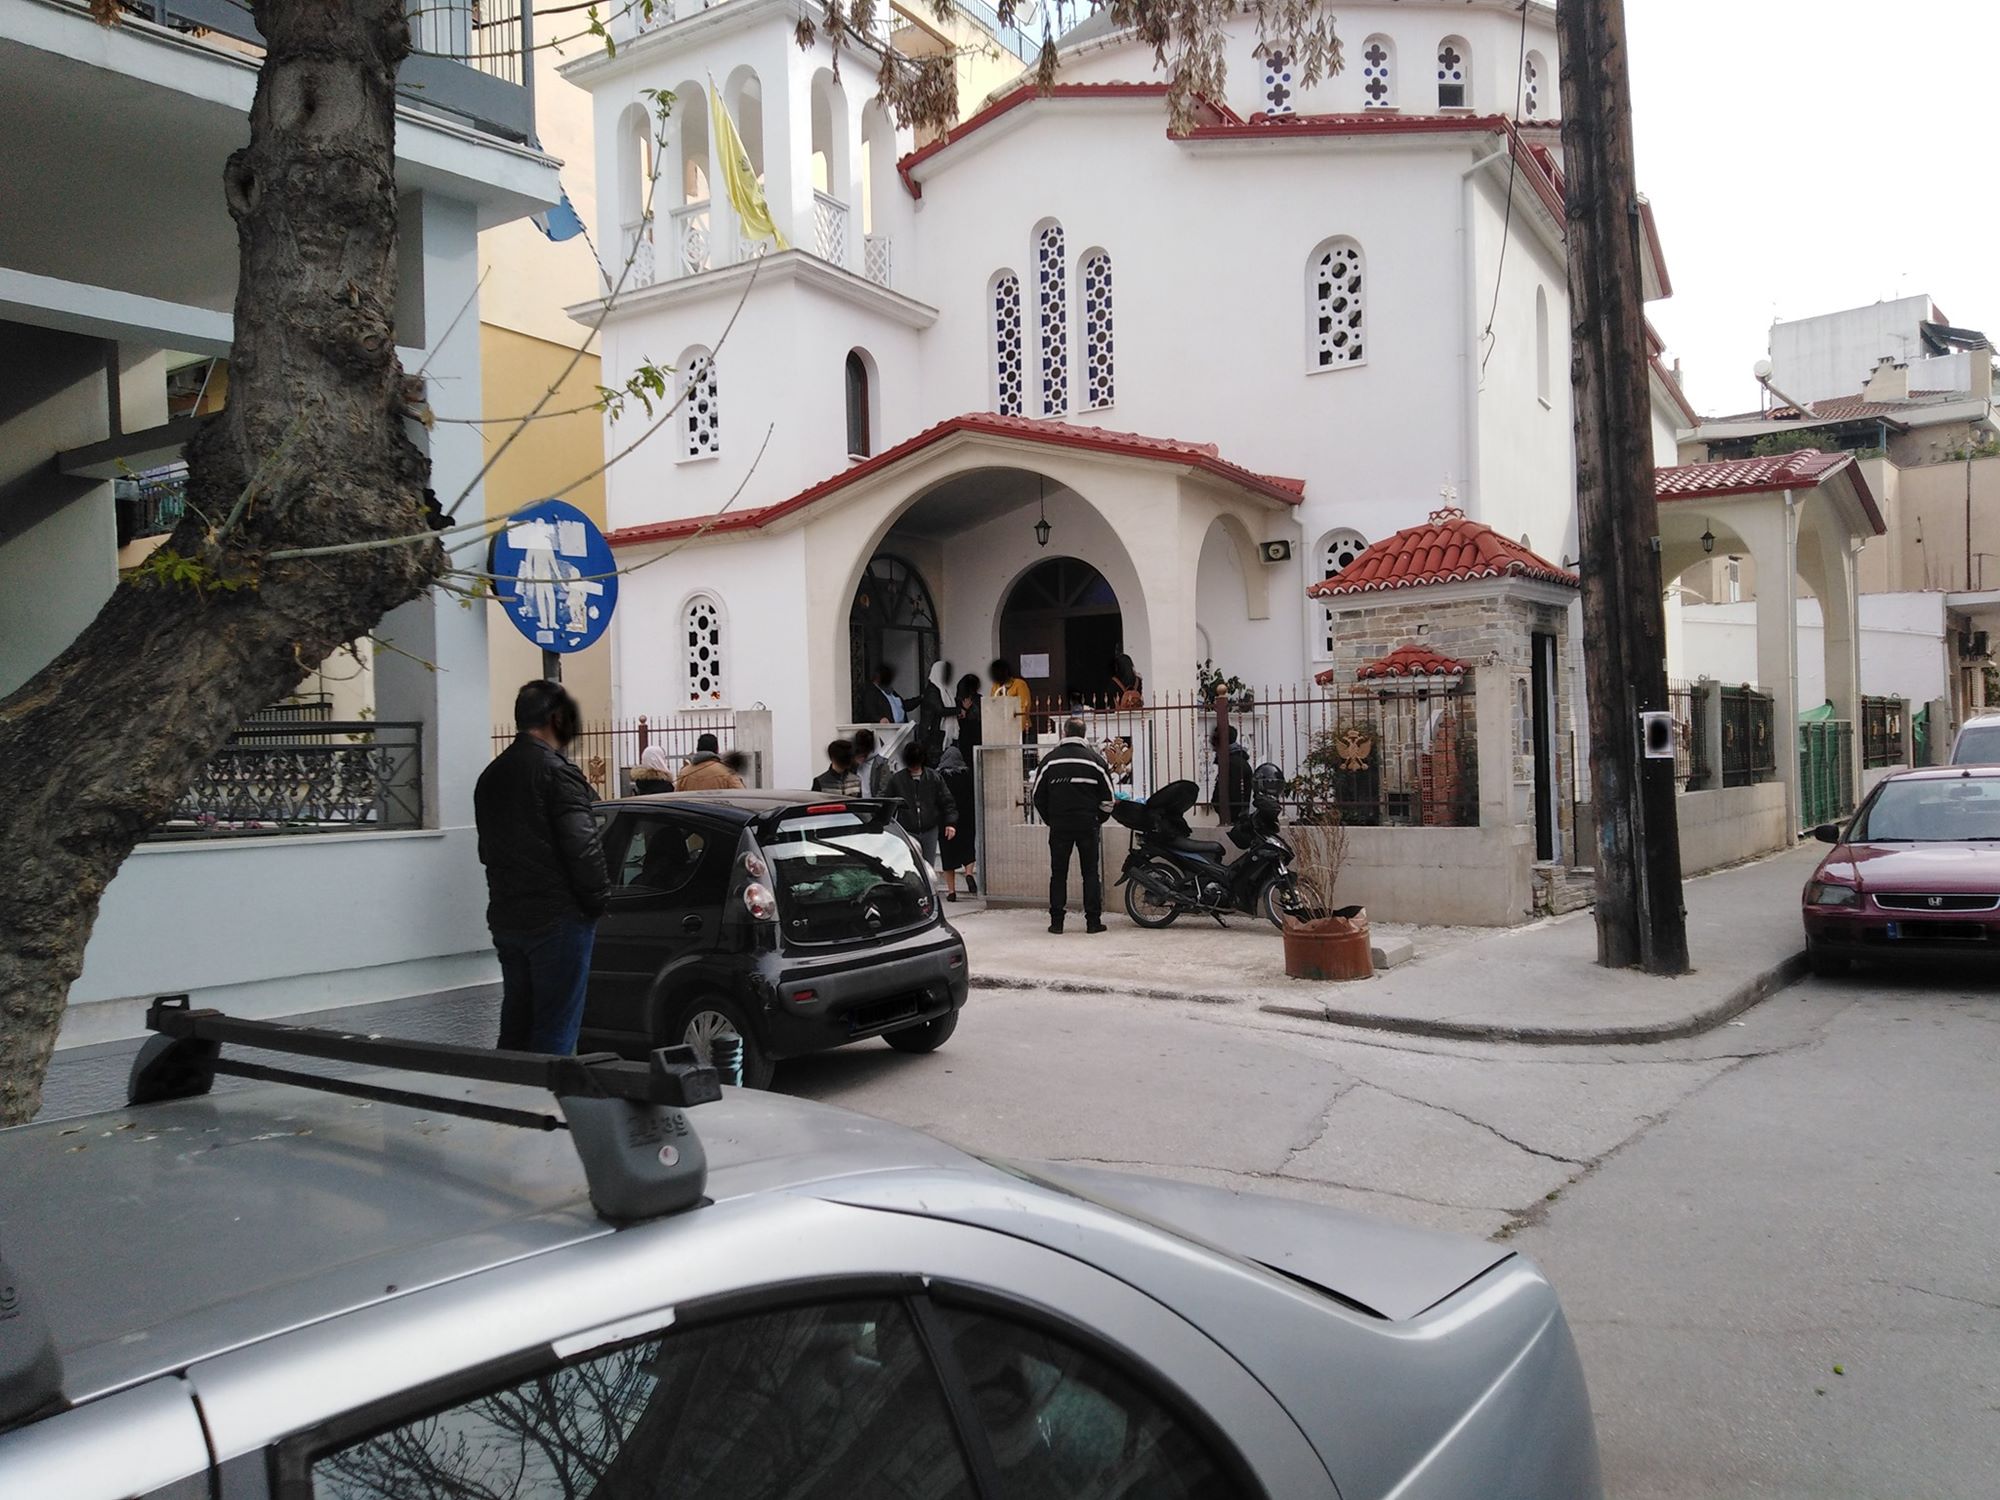 Ουρά πιστών σήμερα Κυριακή σε εκκλησία στο κέντρο της Λάρισας παρά τα μέτρα για τον κορωνοϊό - Η εικόνα σε άλλους Ι.Ν. (φωτο)